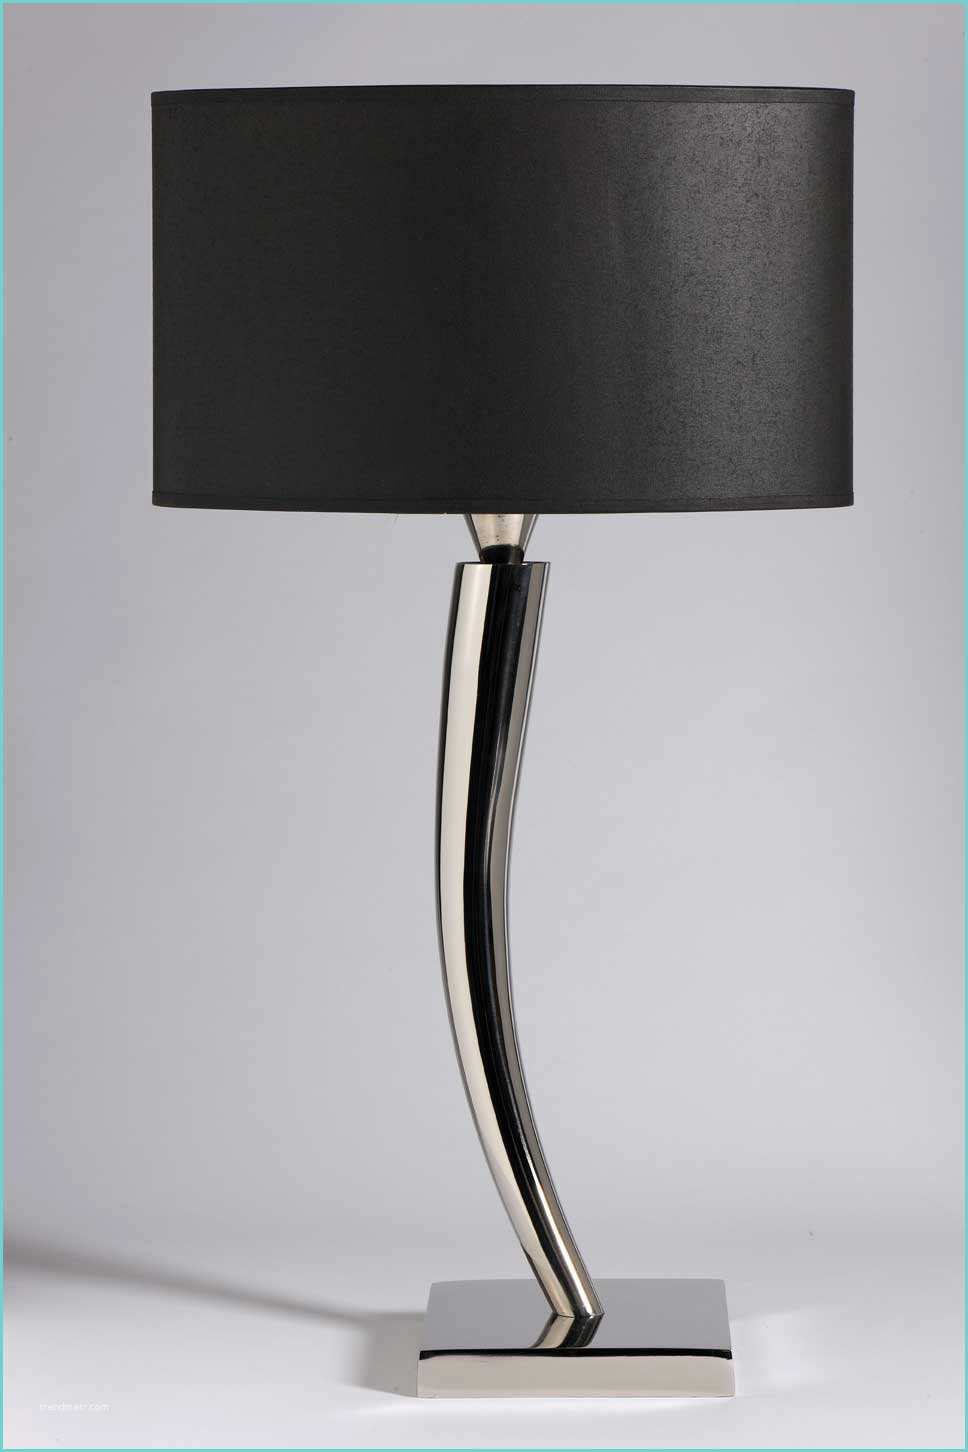 Lampe De Chevet Lampe Chevet Design Contemporain Le Design Led